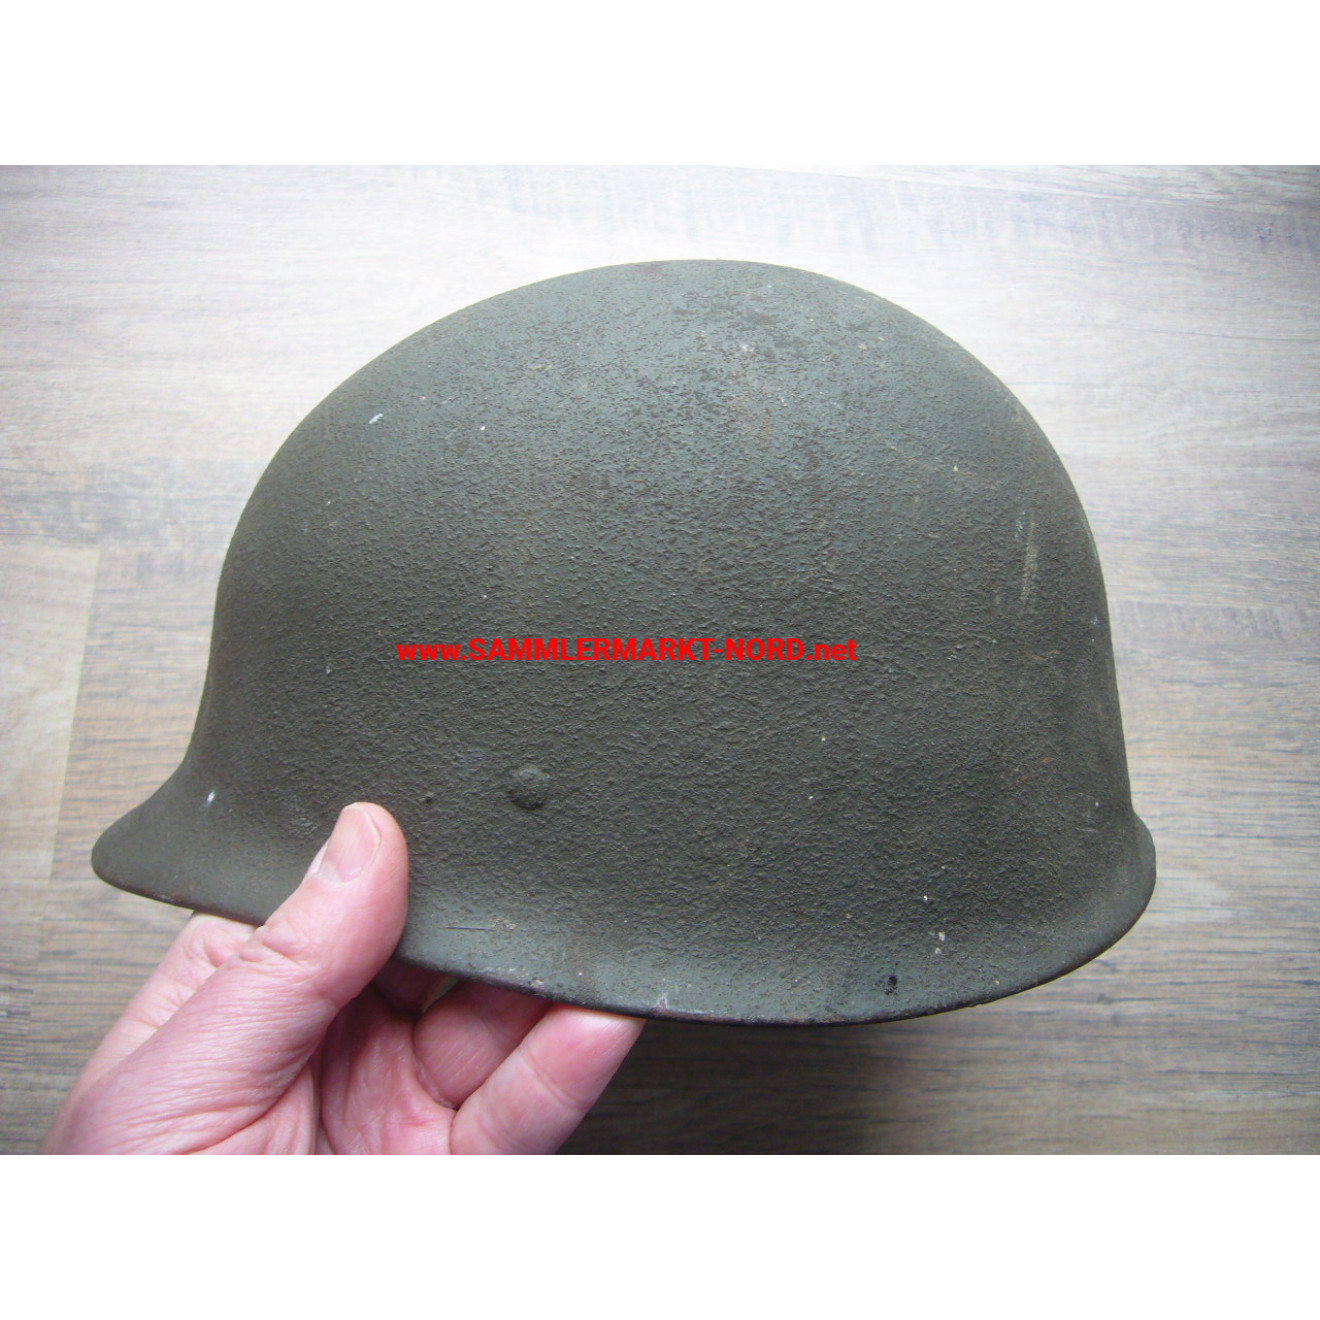 Bundeswehr steel helmet - size 57-61